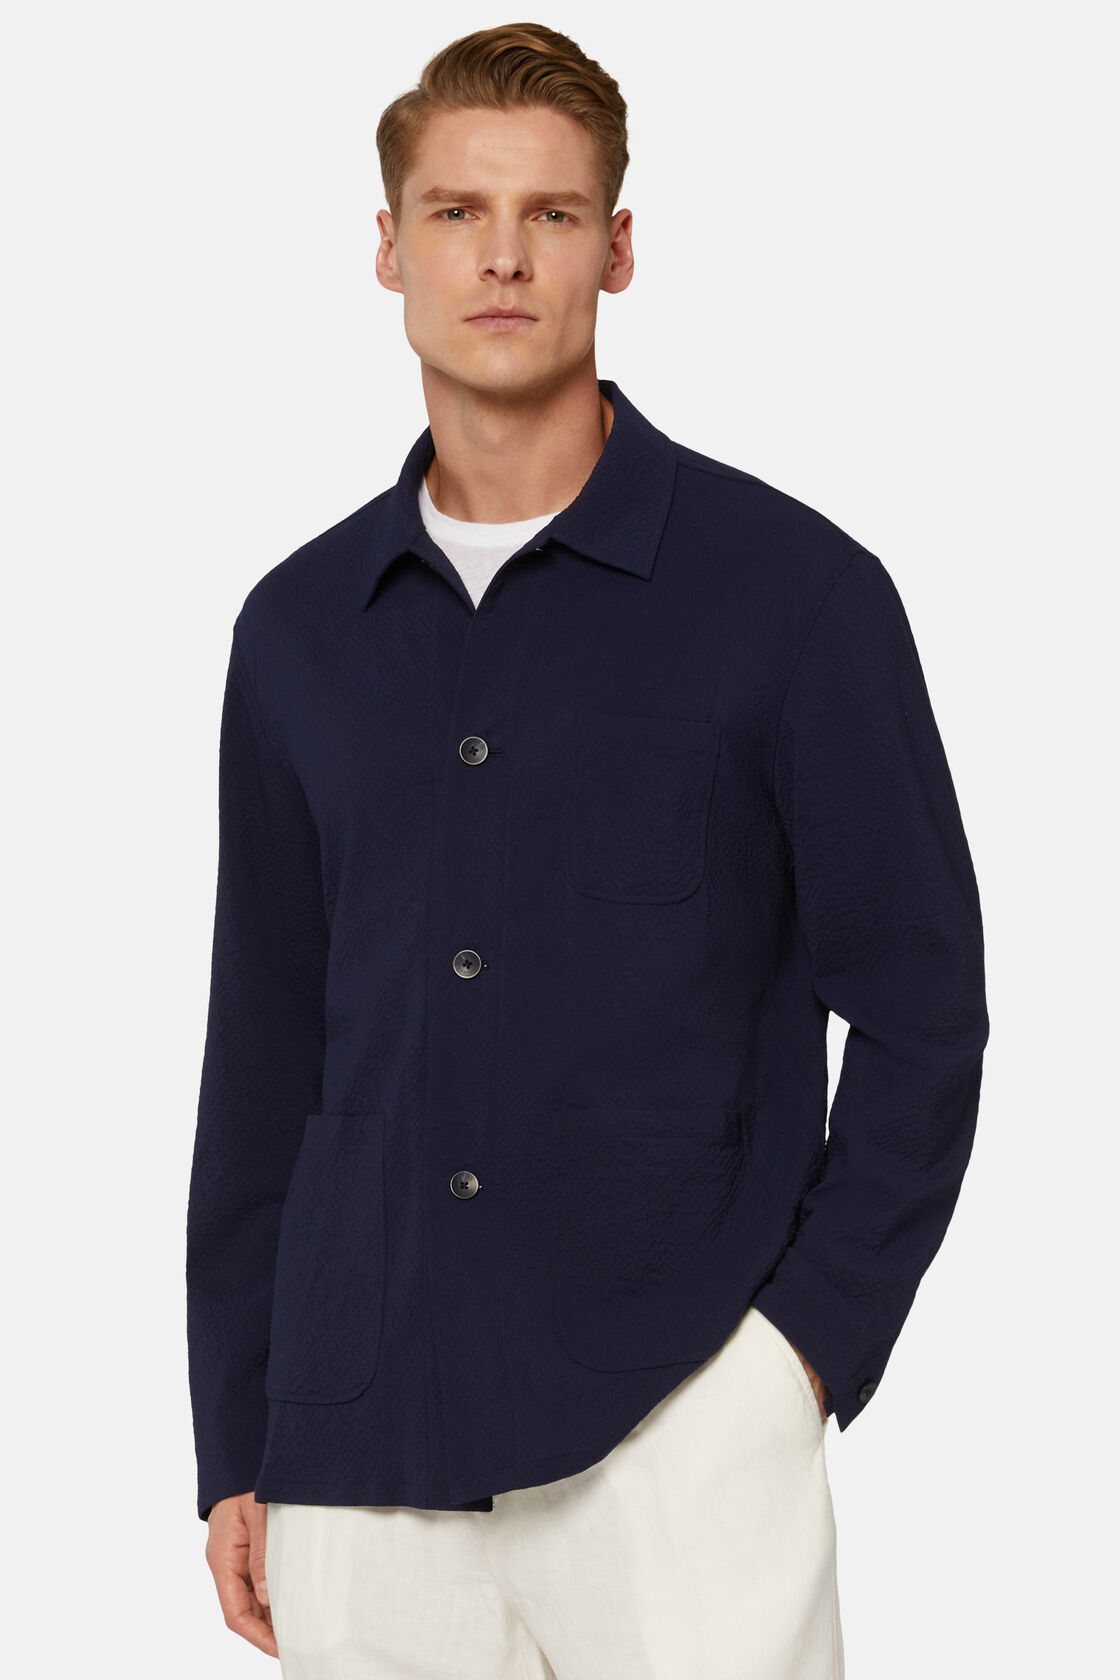 Ζακέτα σε στυλ πουκαμίσου από μάλλινο ύφασμα σιρσούκερ, σε ναυτικό μπλε χρώμα , Navy blue, hi-res